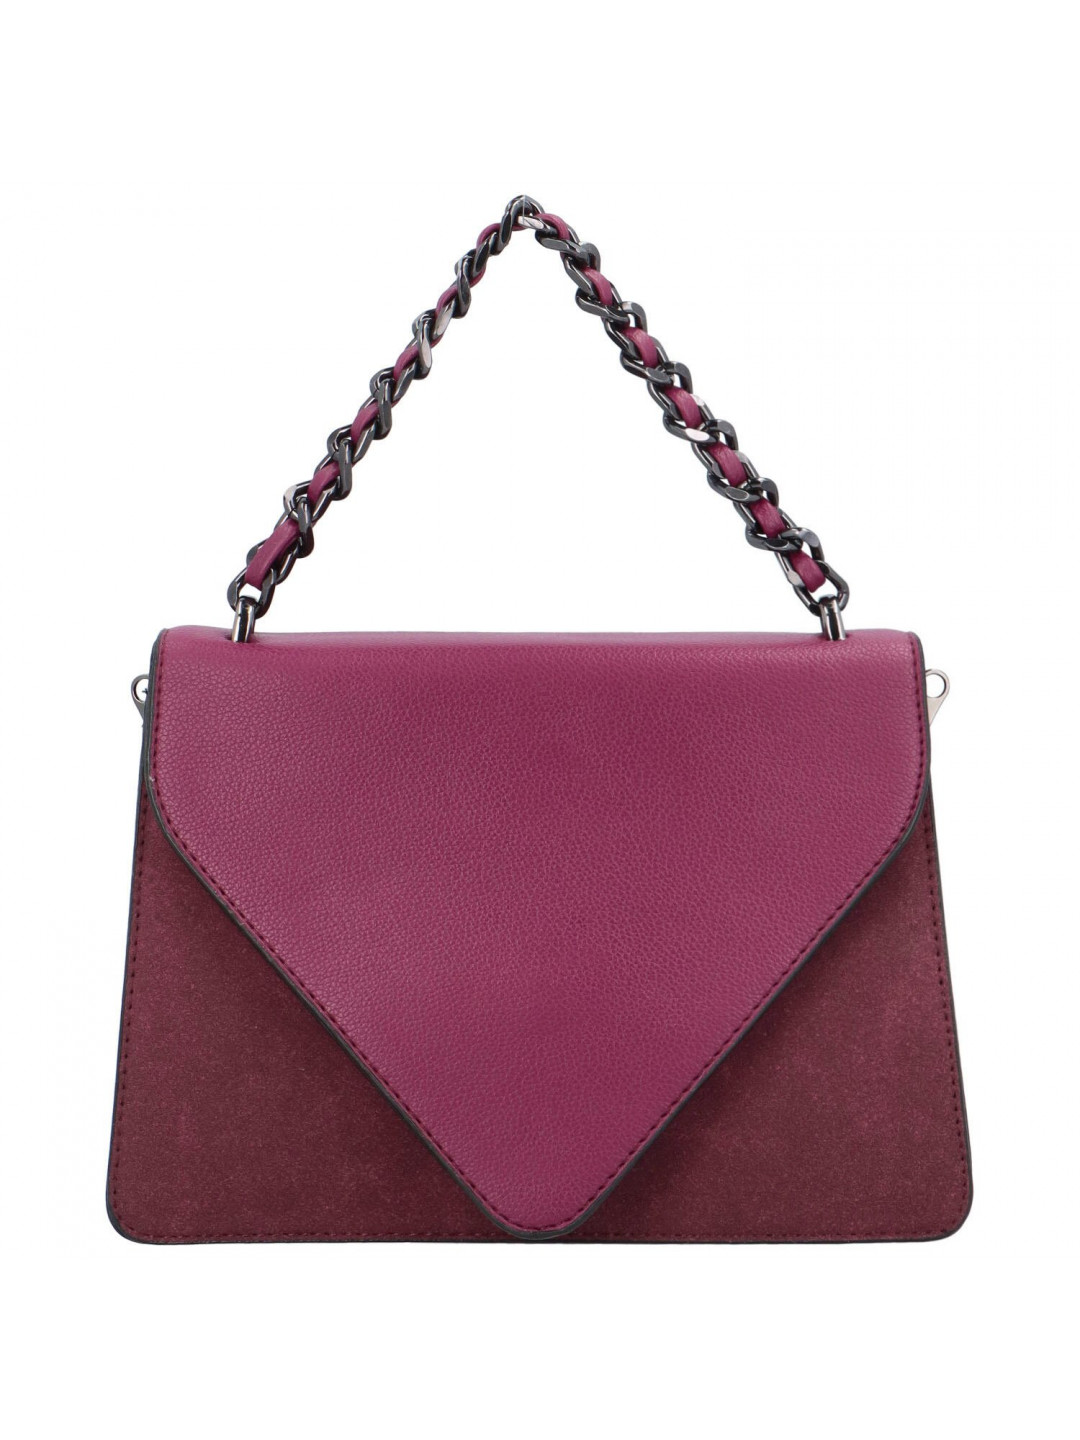 Luxusní dámská koženková kabelka Trinida fialová